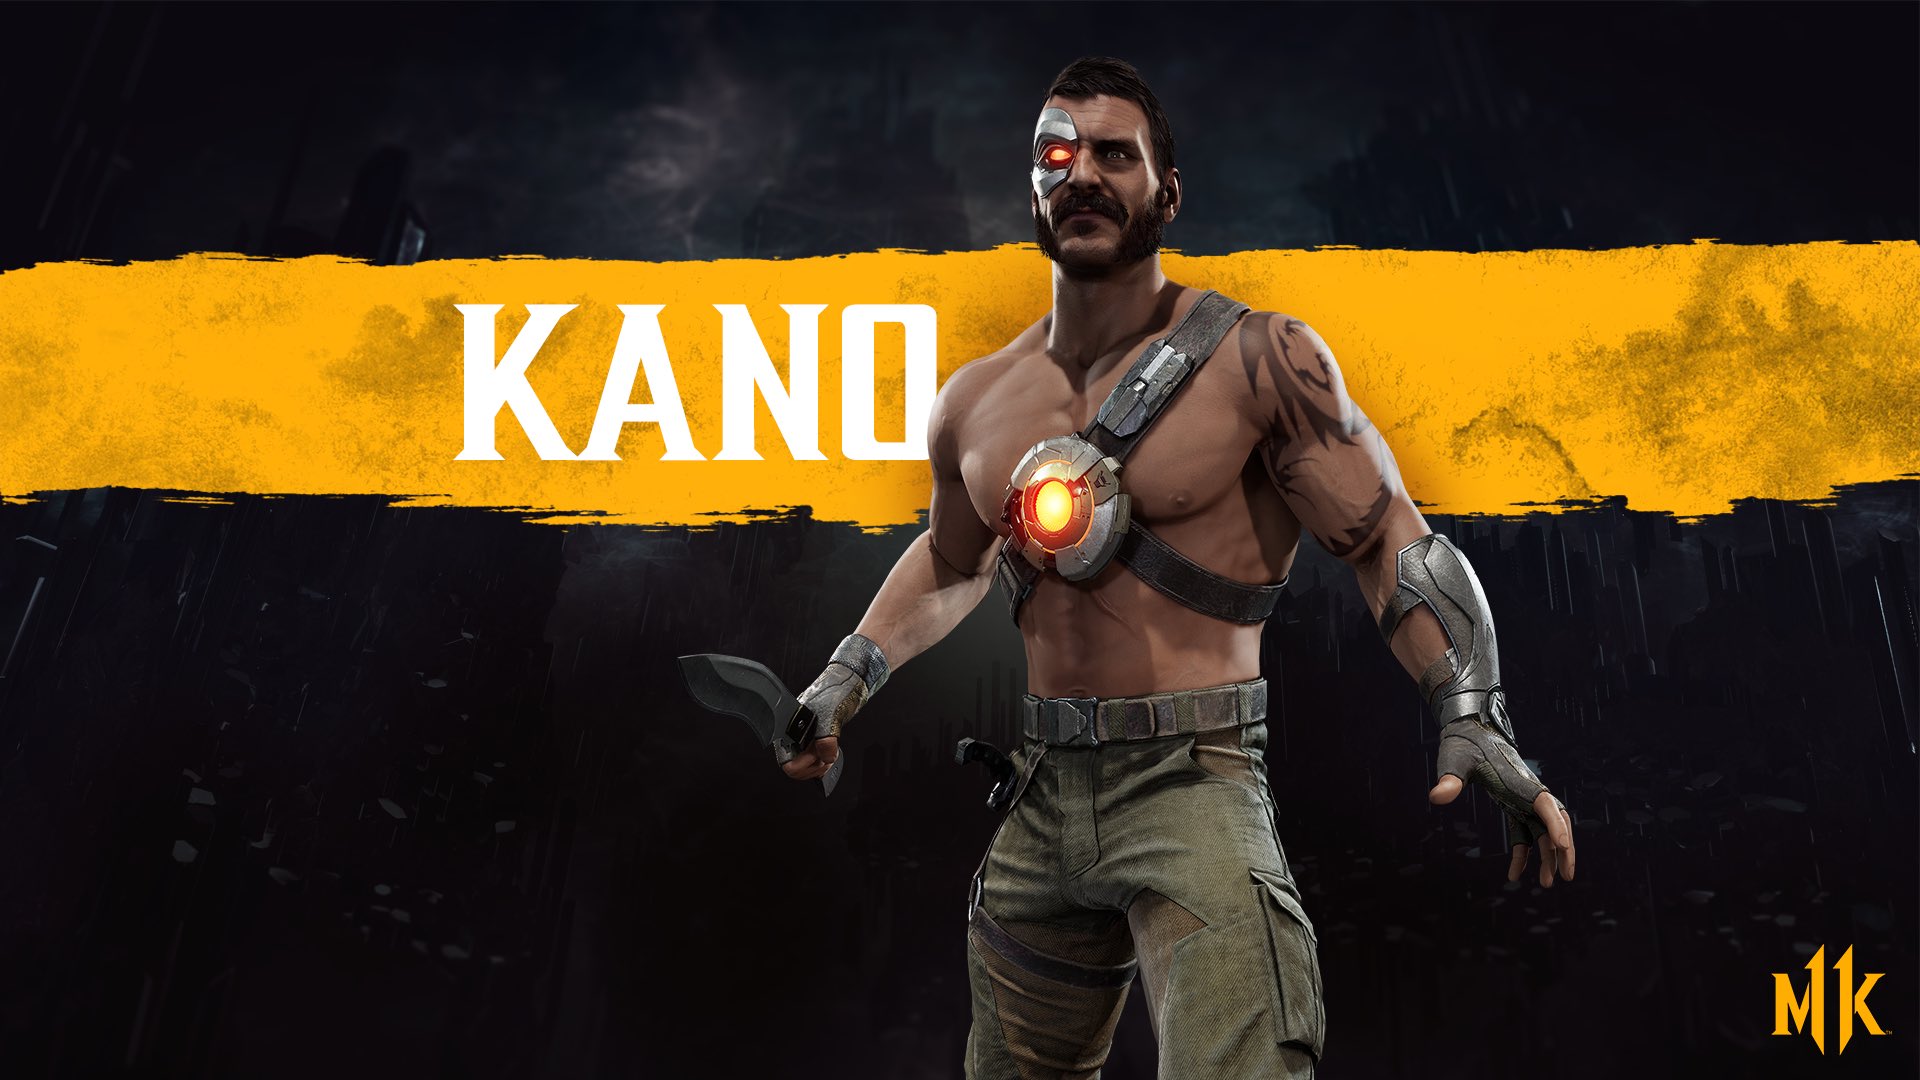 天 Fighters Generation on Twitter: "Kano Announced for Mortal Kombat 11: (https://t.co/xR2izDwDqE ...